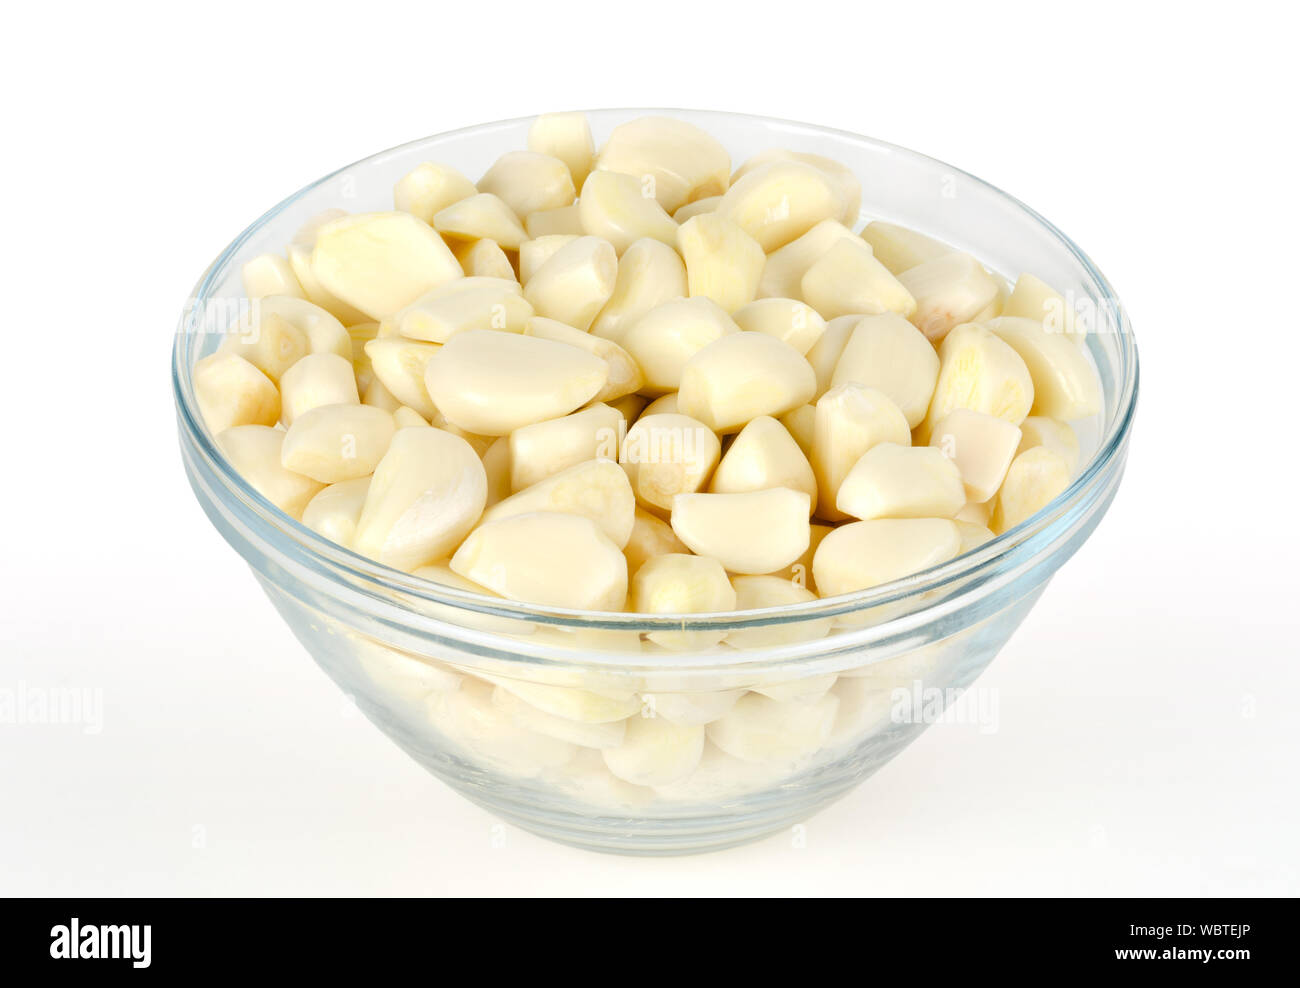 Spicchi di aglio sgusciati in recipiente di vetro, vista frontale. Allium sativum, con sapore pungente, usato come condimento o condimento e in medicina. Foto Stock